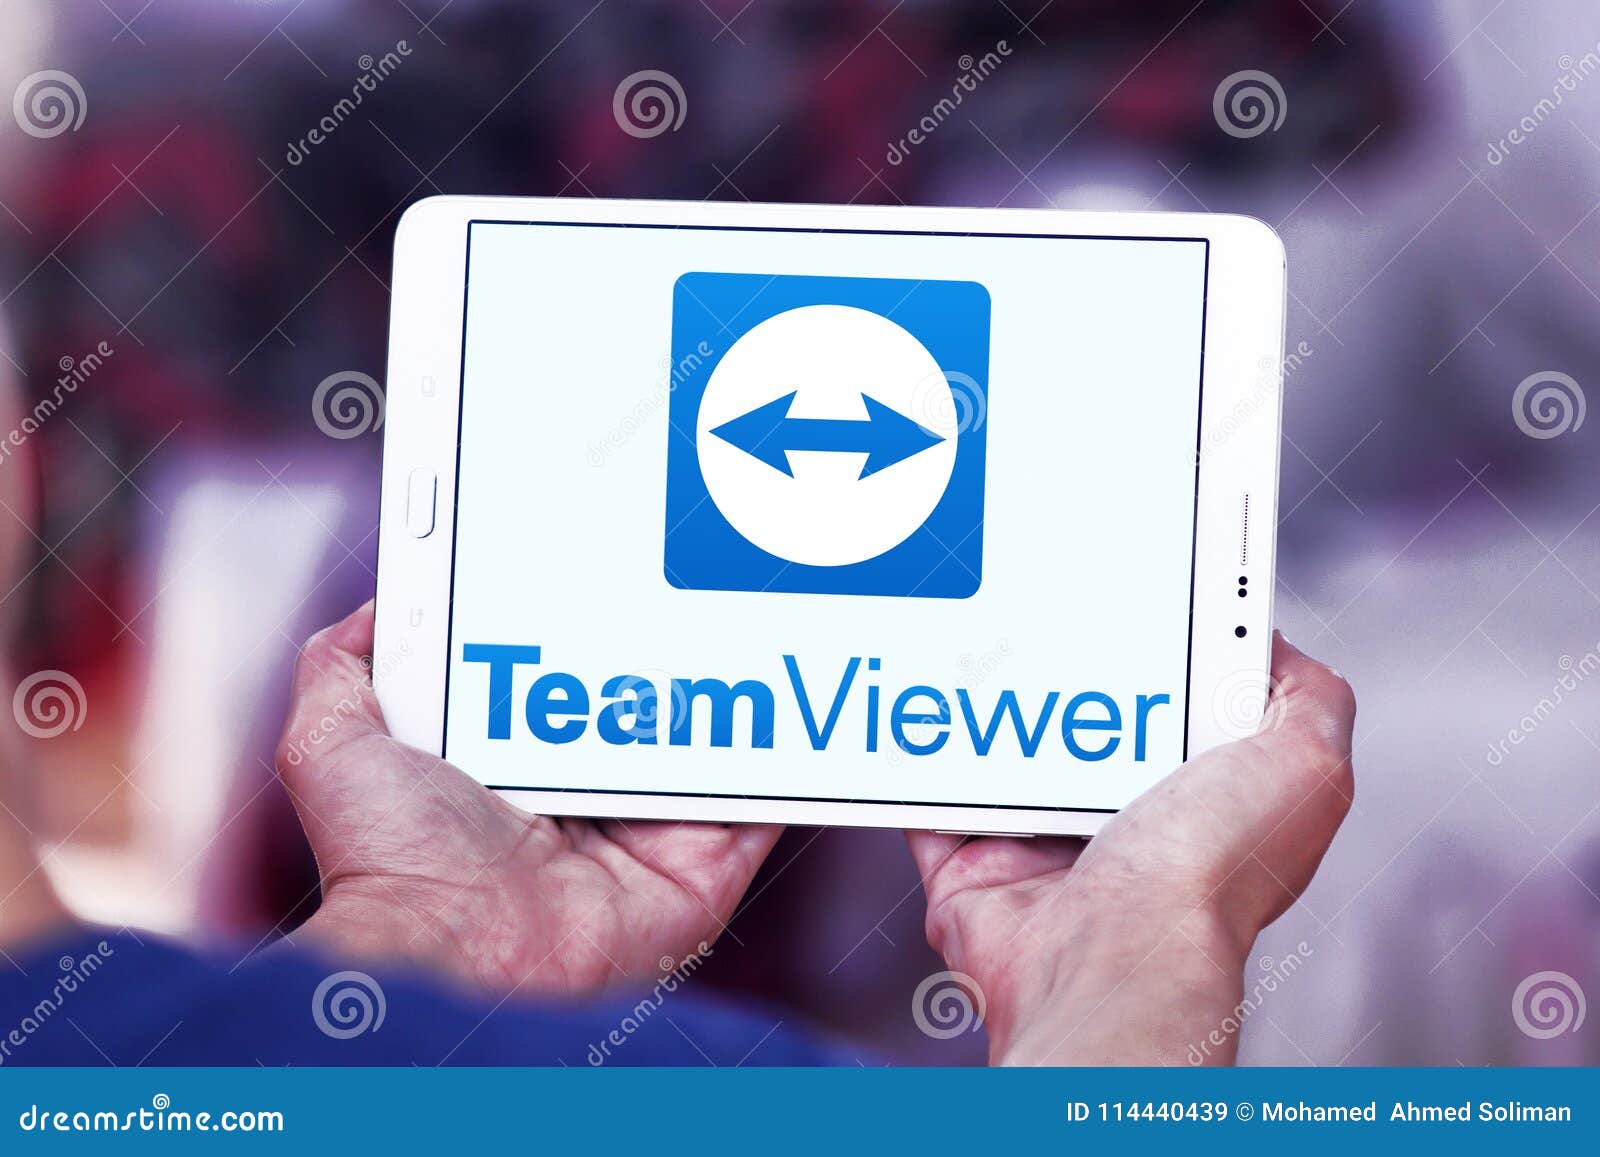 online screen sharing tools teamviewer